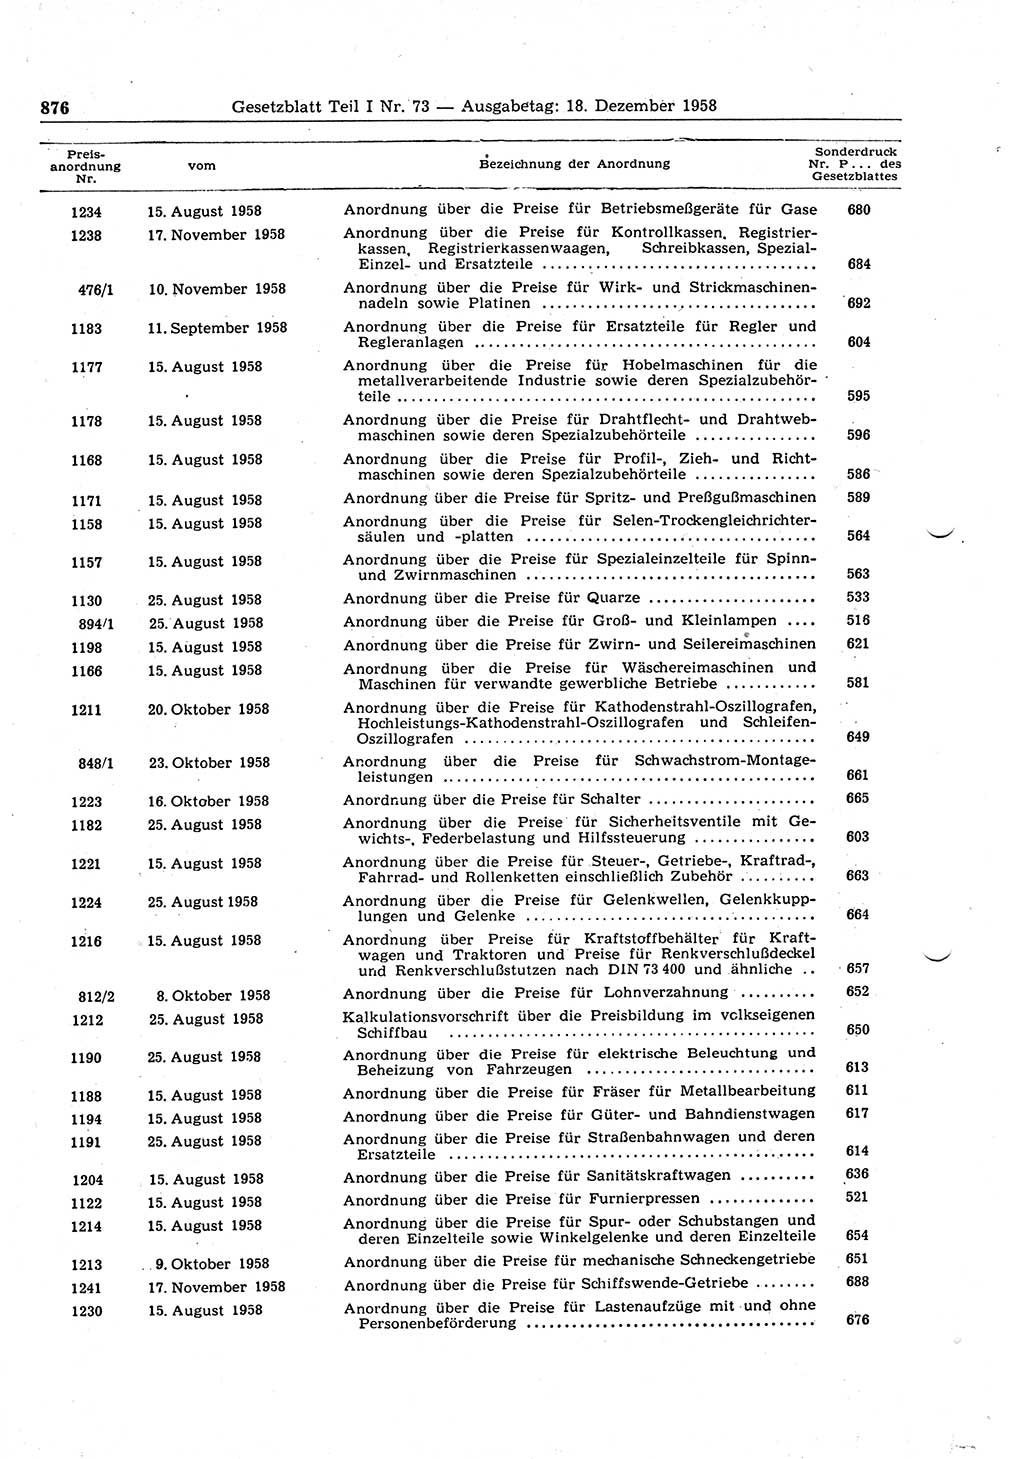 Gesetzblatt (GBl.) der Deutschen Demokratischen Republik (DDR) Teil Ⅰ 1958, Seite 876 (GBl. DDR Ⅰ 1958, S. 876)